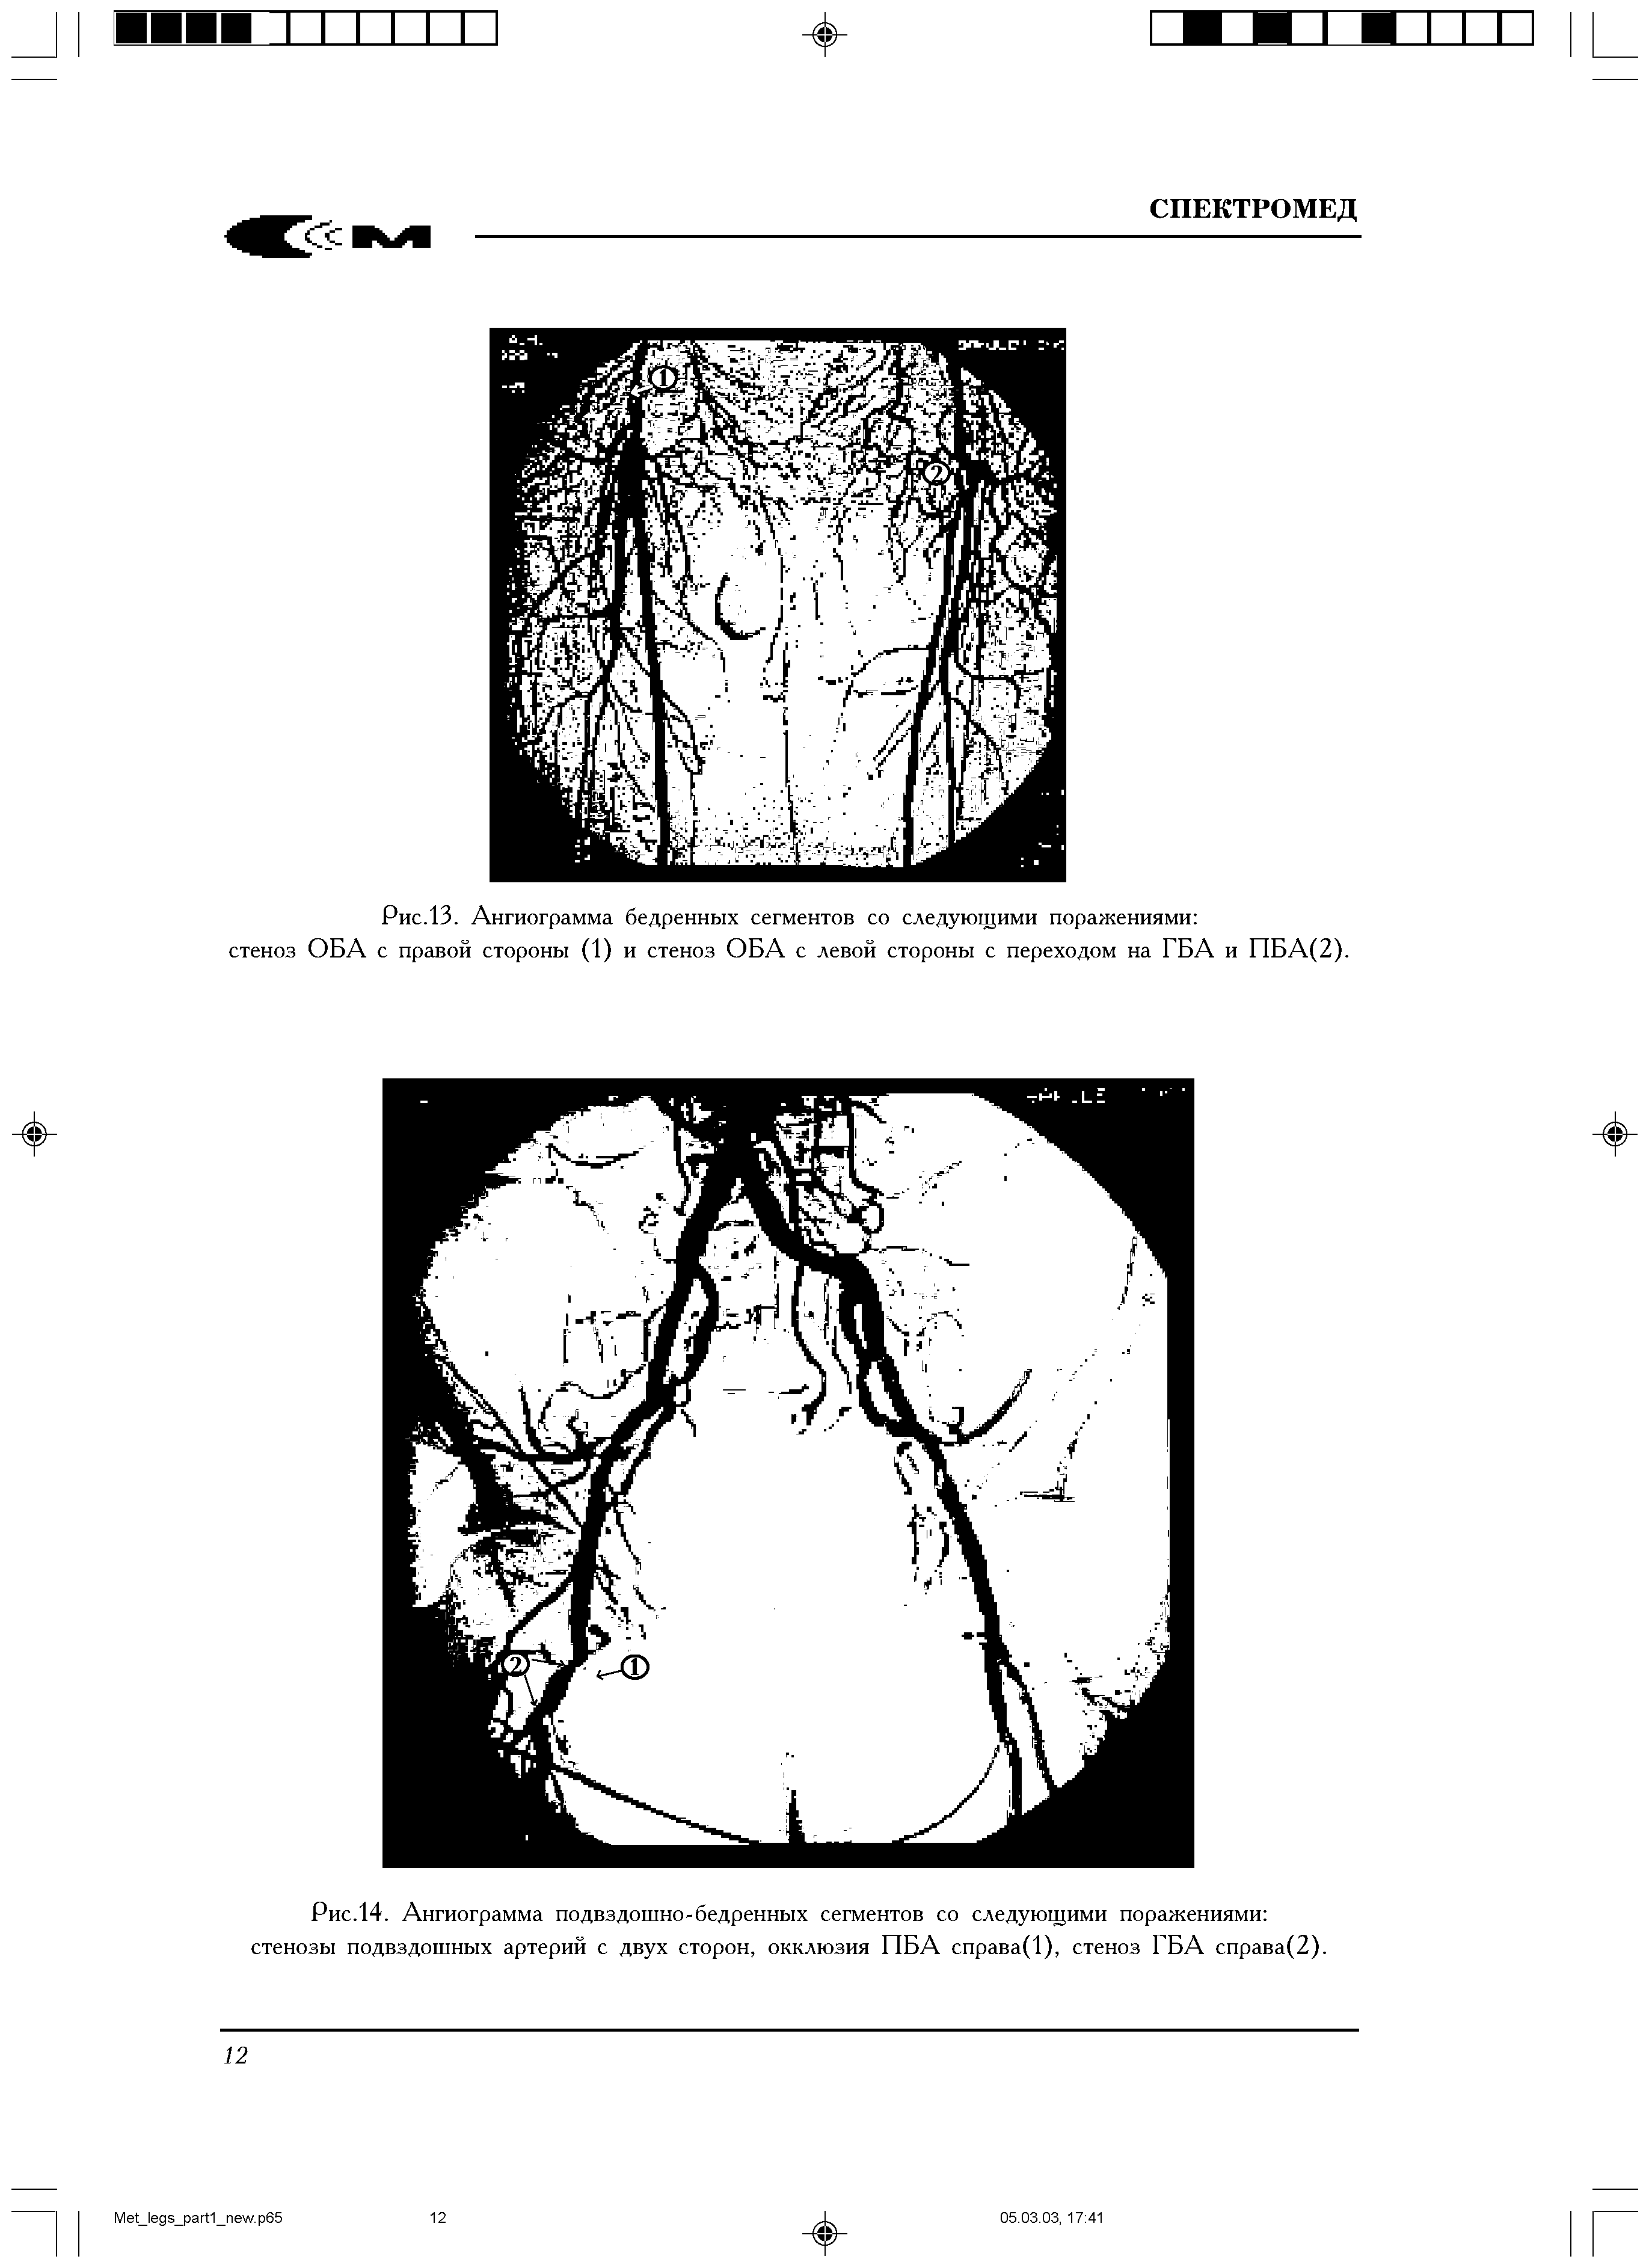 Рис.14. Ангиограмма подвздошно-бедренных сегментов со следующими поражениями стенозы подвздошных артерий с двух сторон, окклюзия ПБА справа(1), стеноз ГБА справа(2).